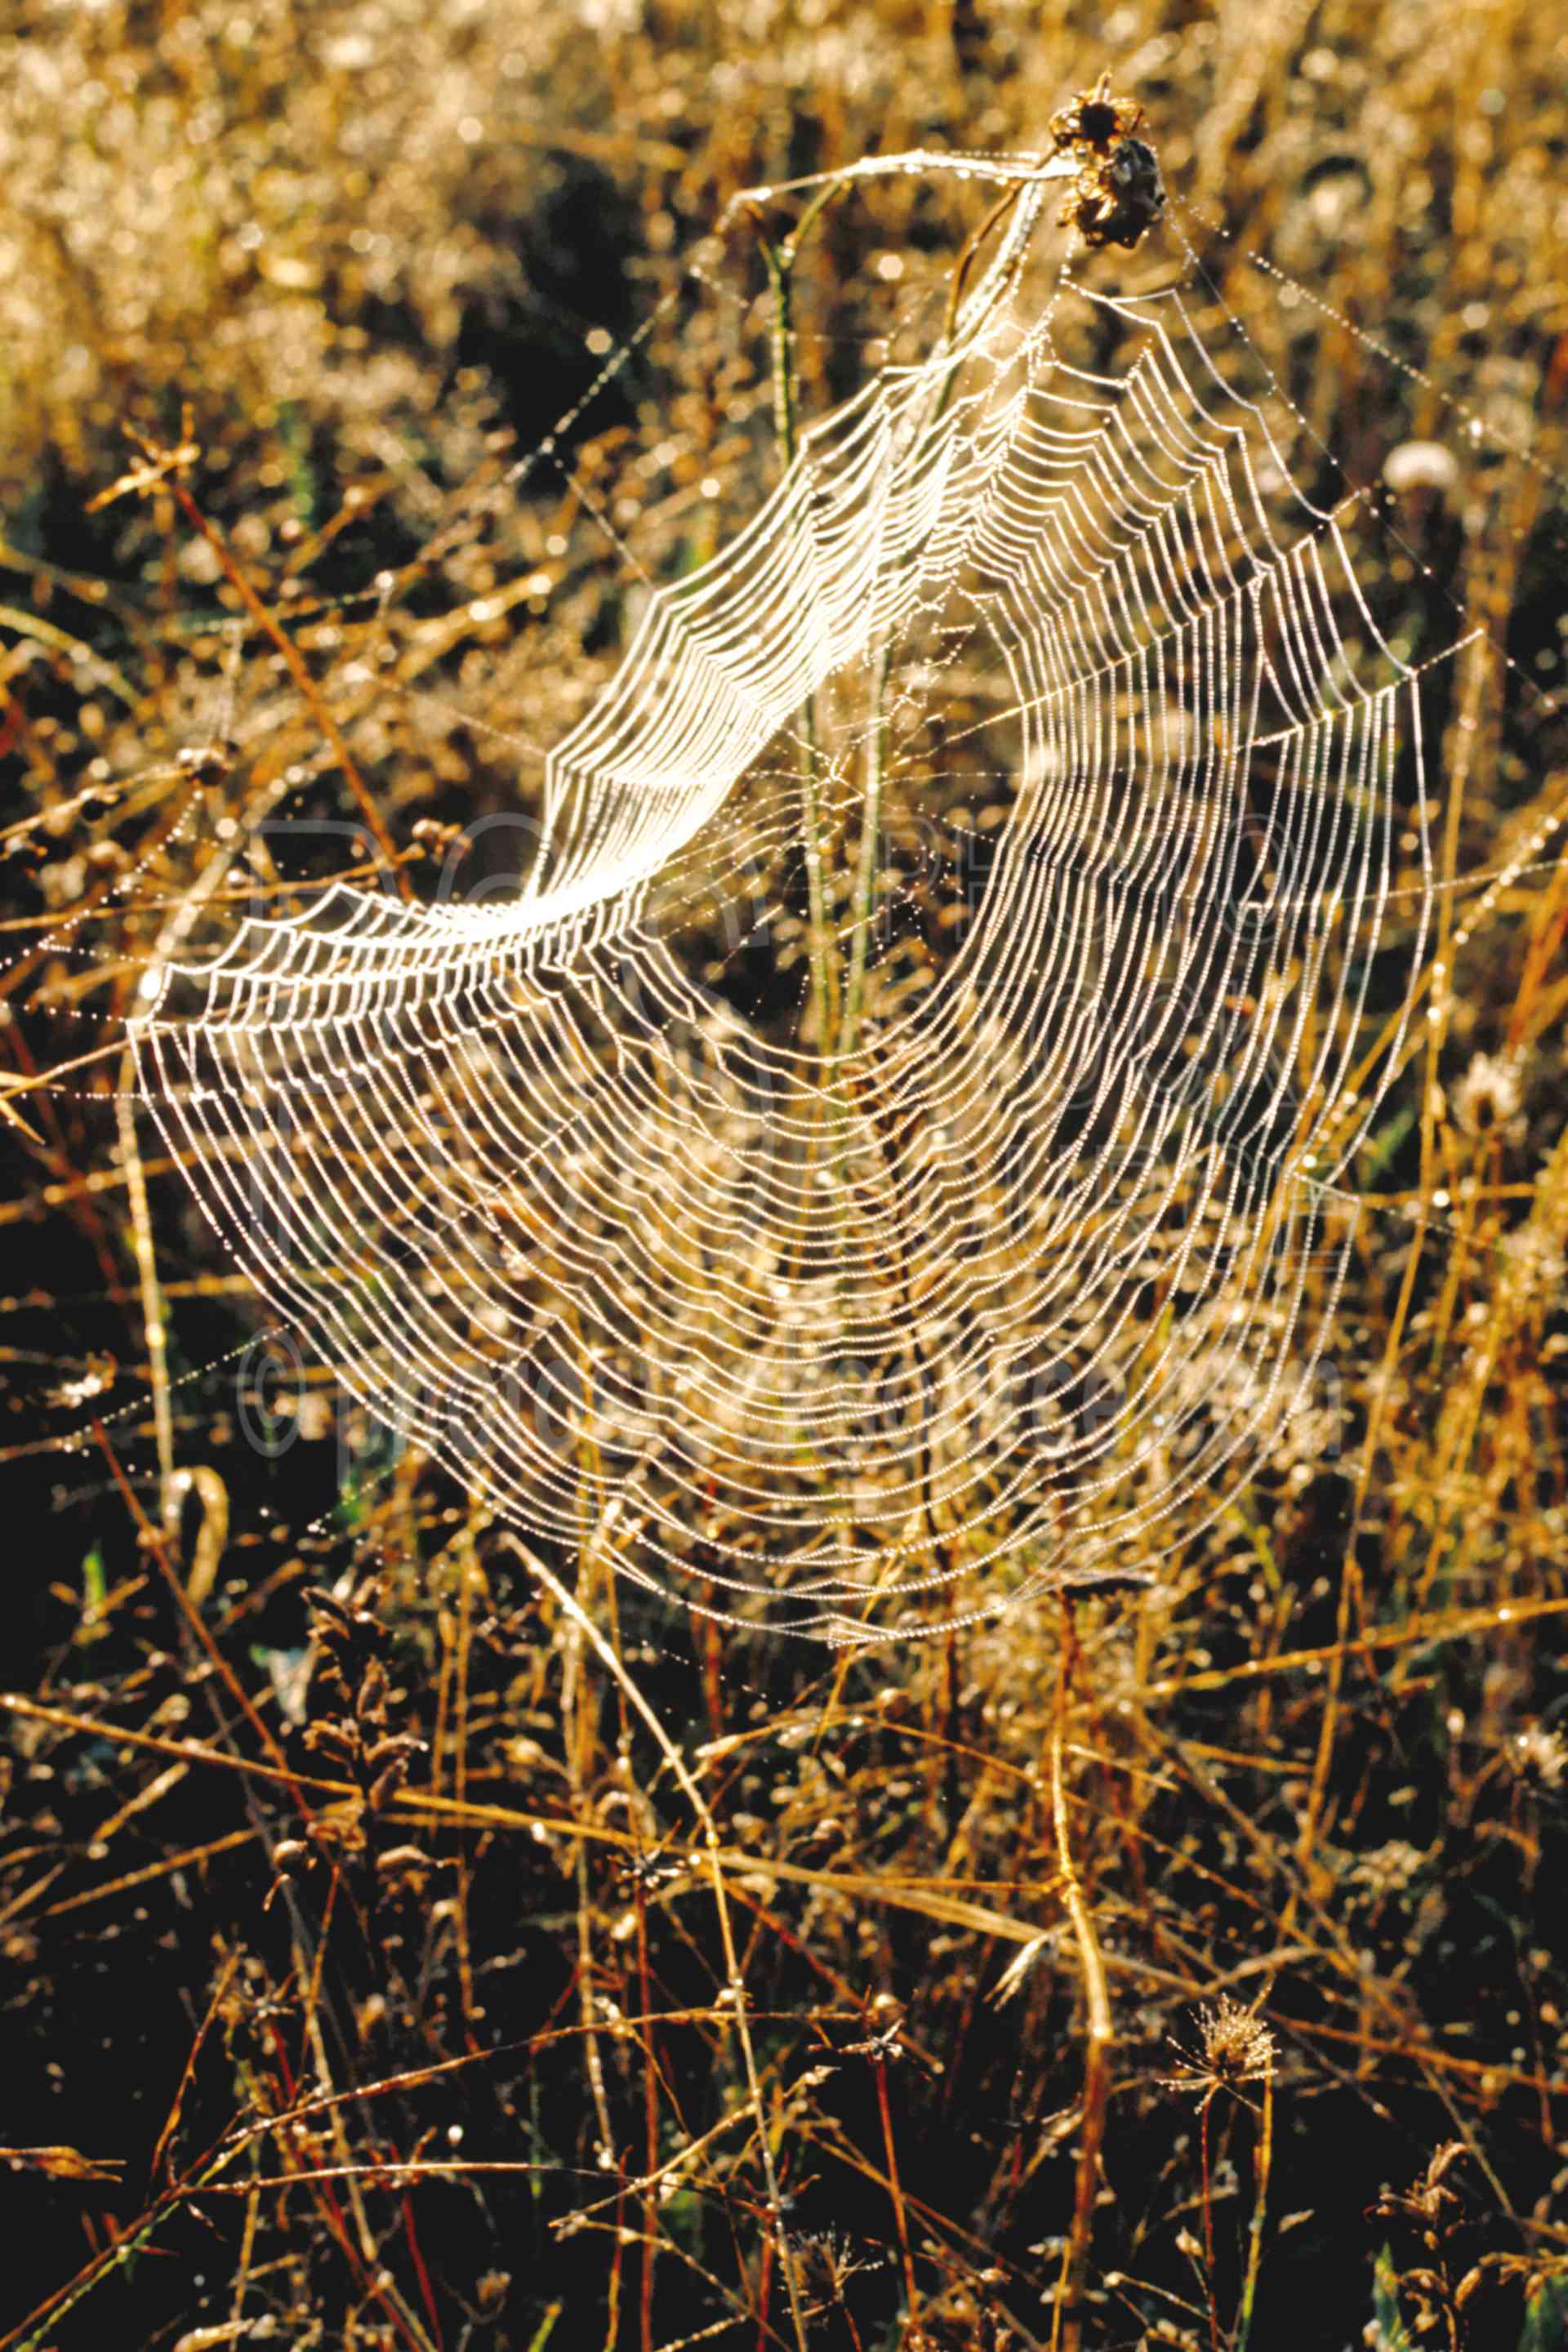 Spider Web,garden spider,webs,bugs,usas,animals